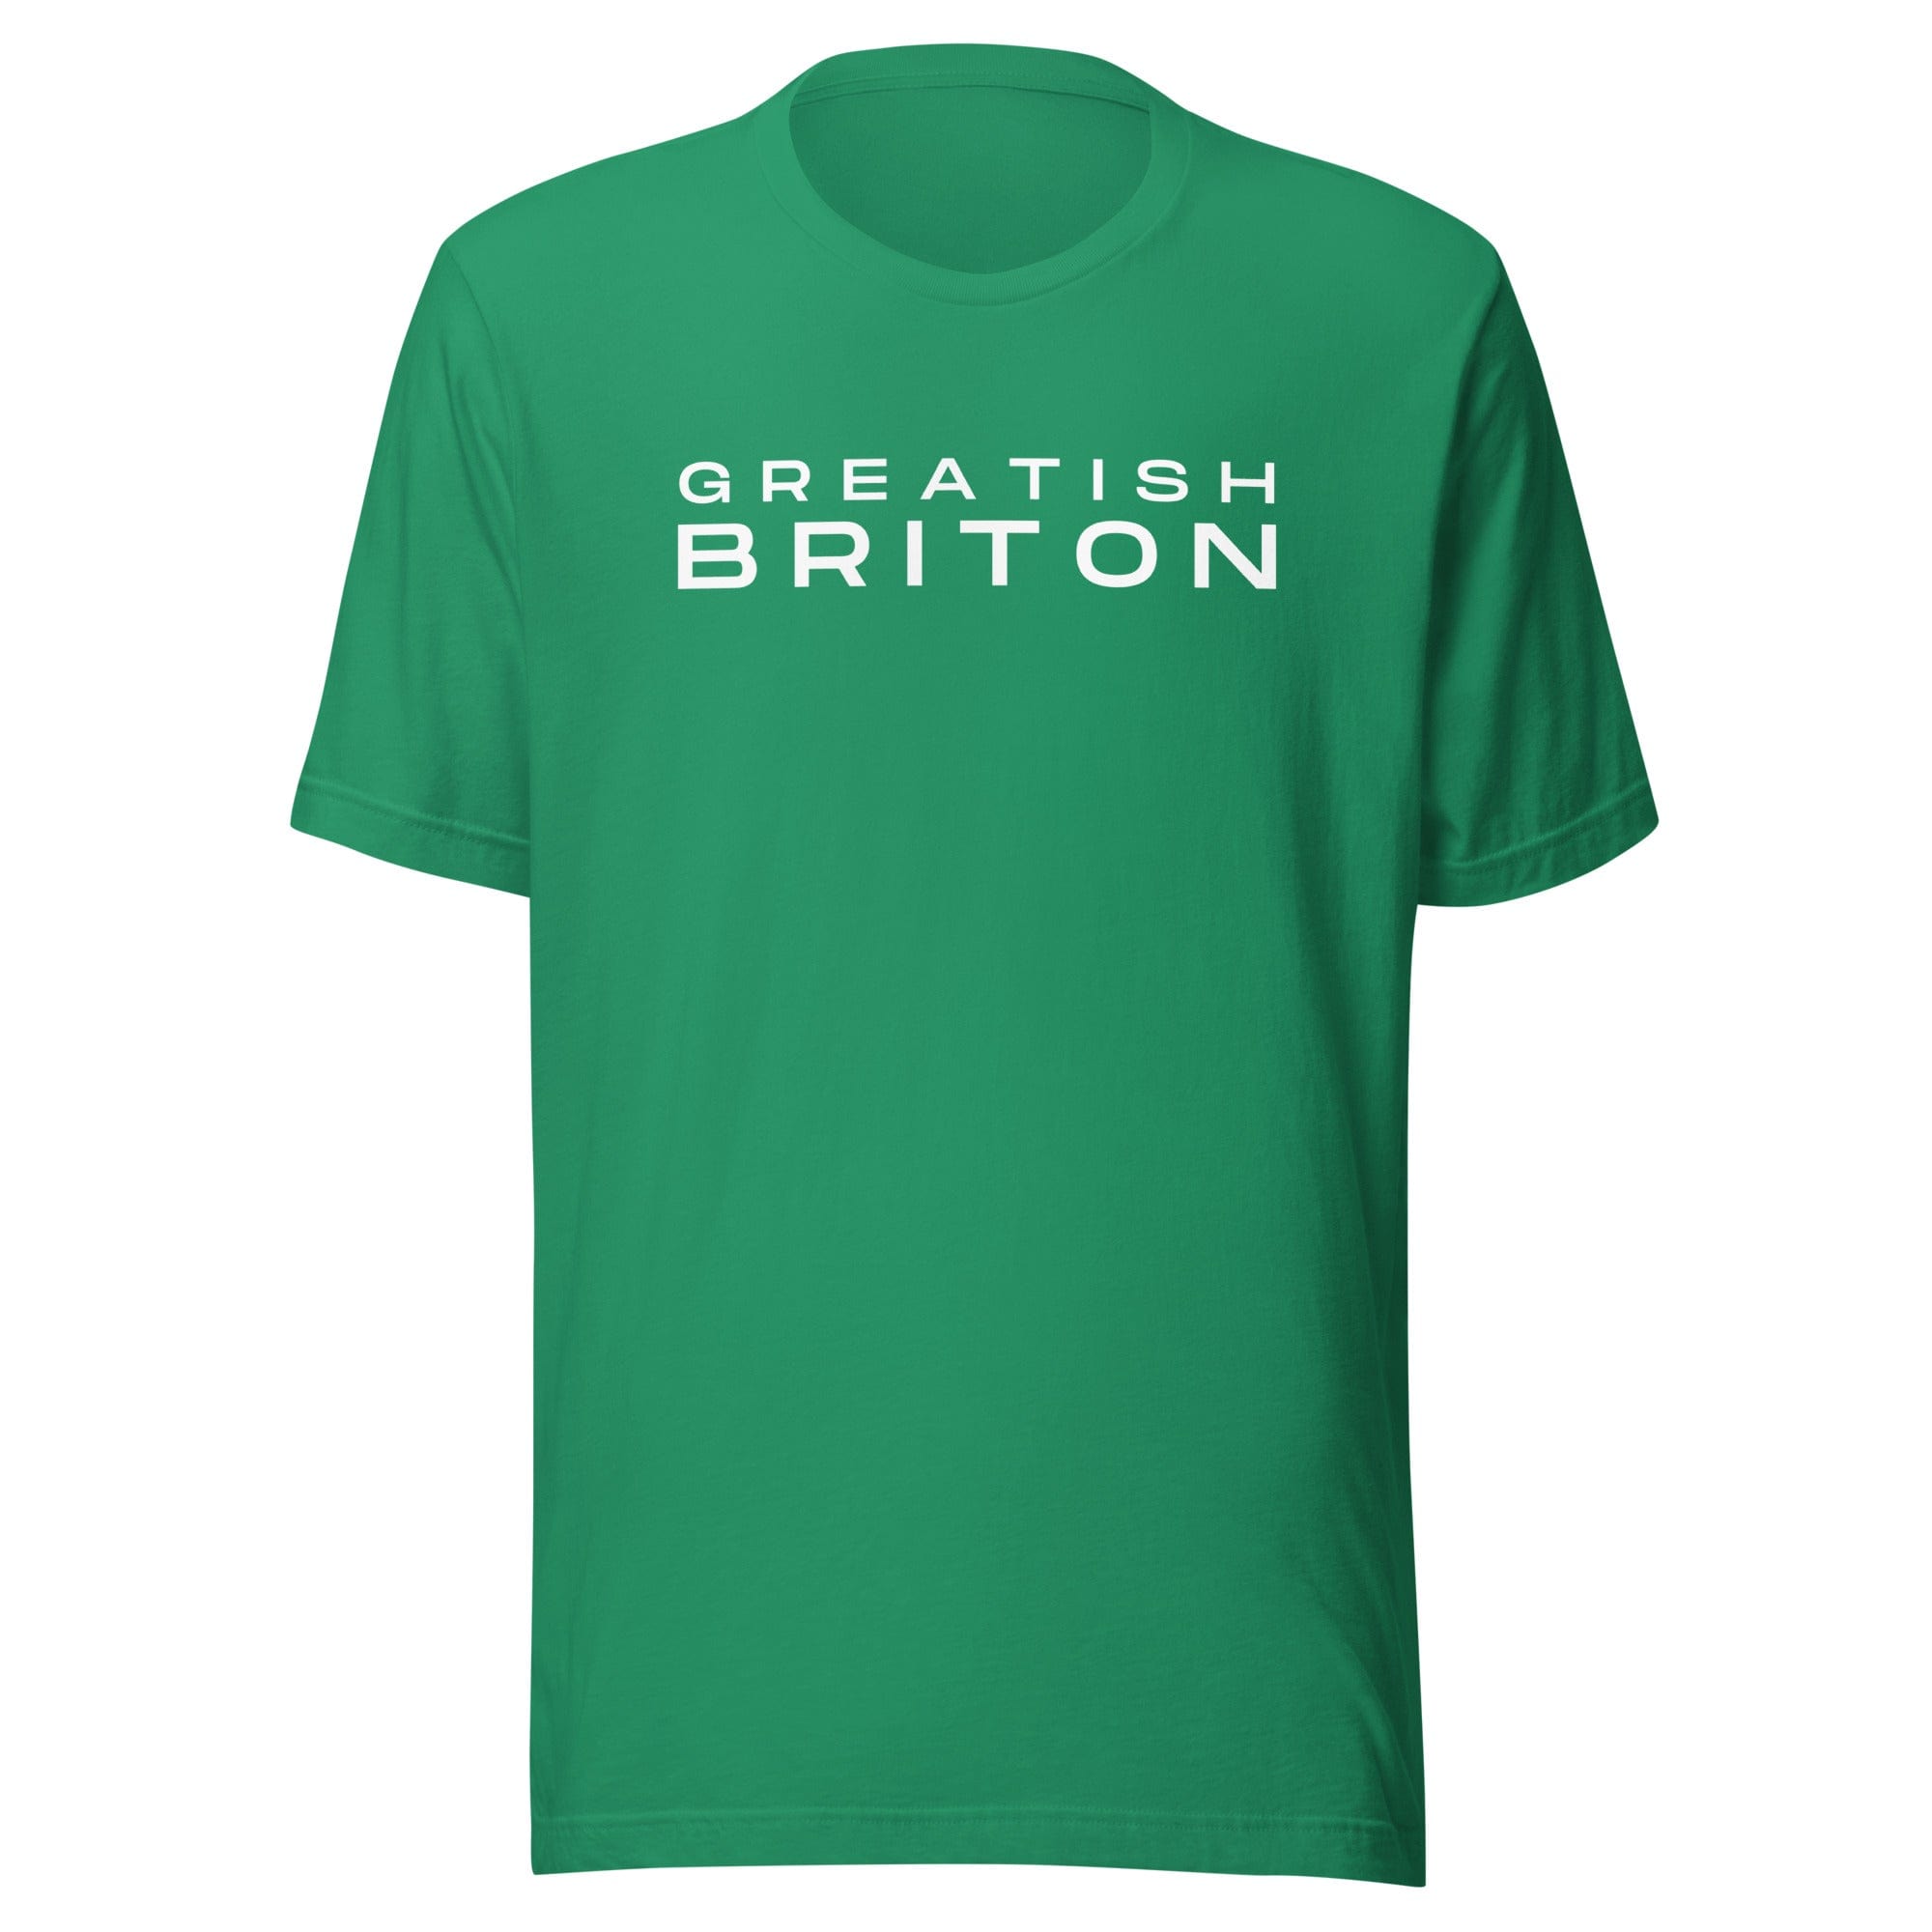 Greatish Briton T-shirt Kelly / S Shirts & Tops Jolly & Goode